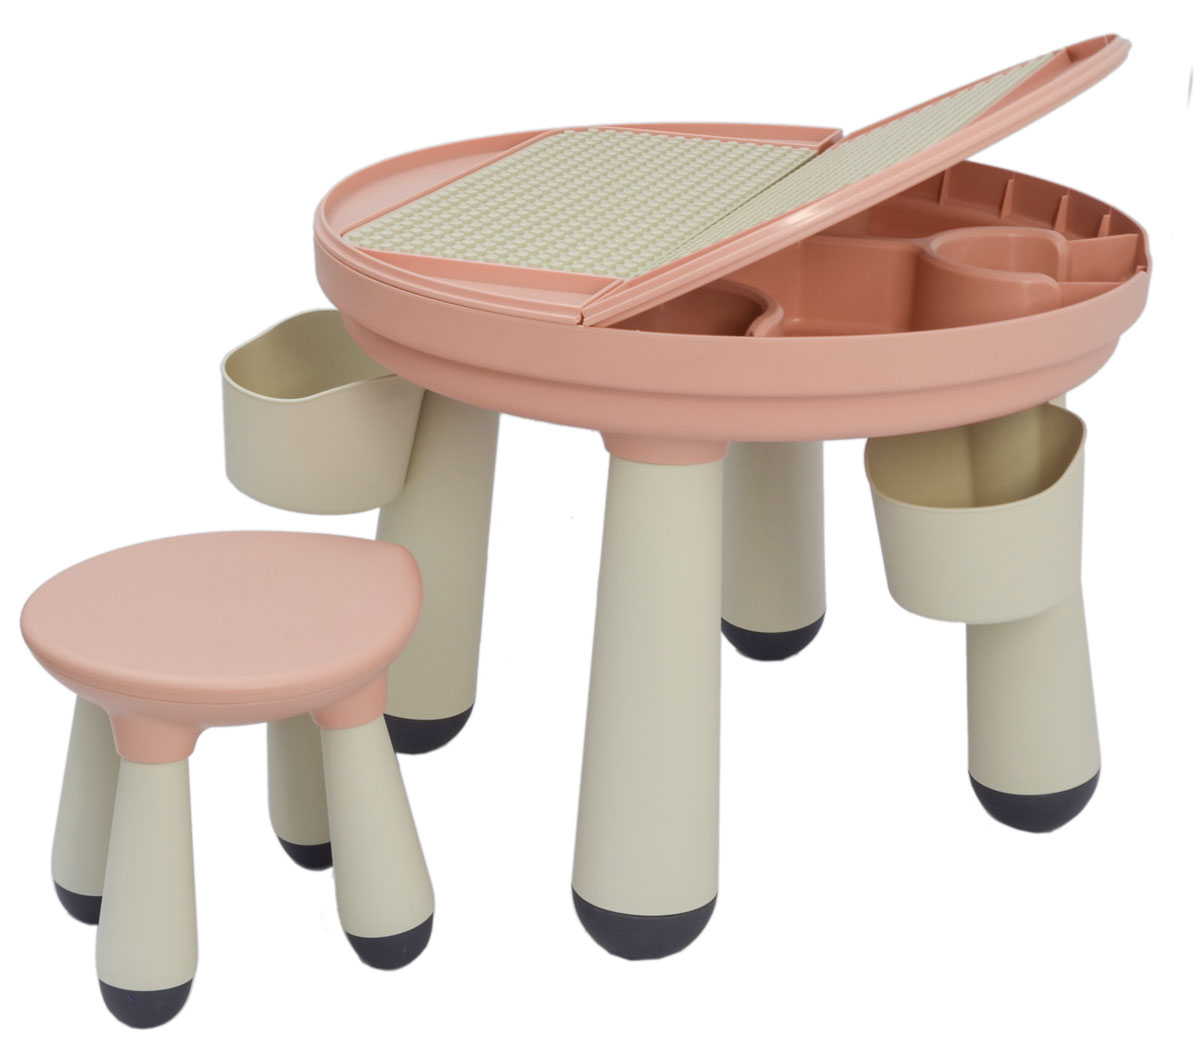 7-in-1 Multifunktionaler Spieltisch Set Bautisch mit 100 Bausteine & 2 Stühlen 